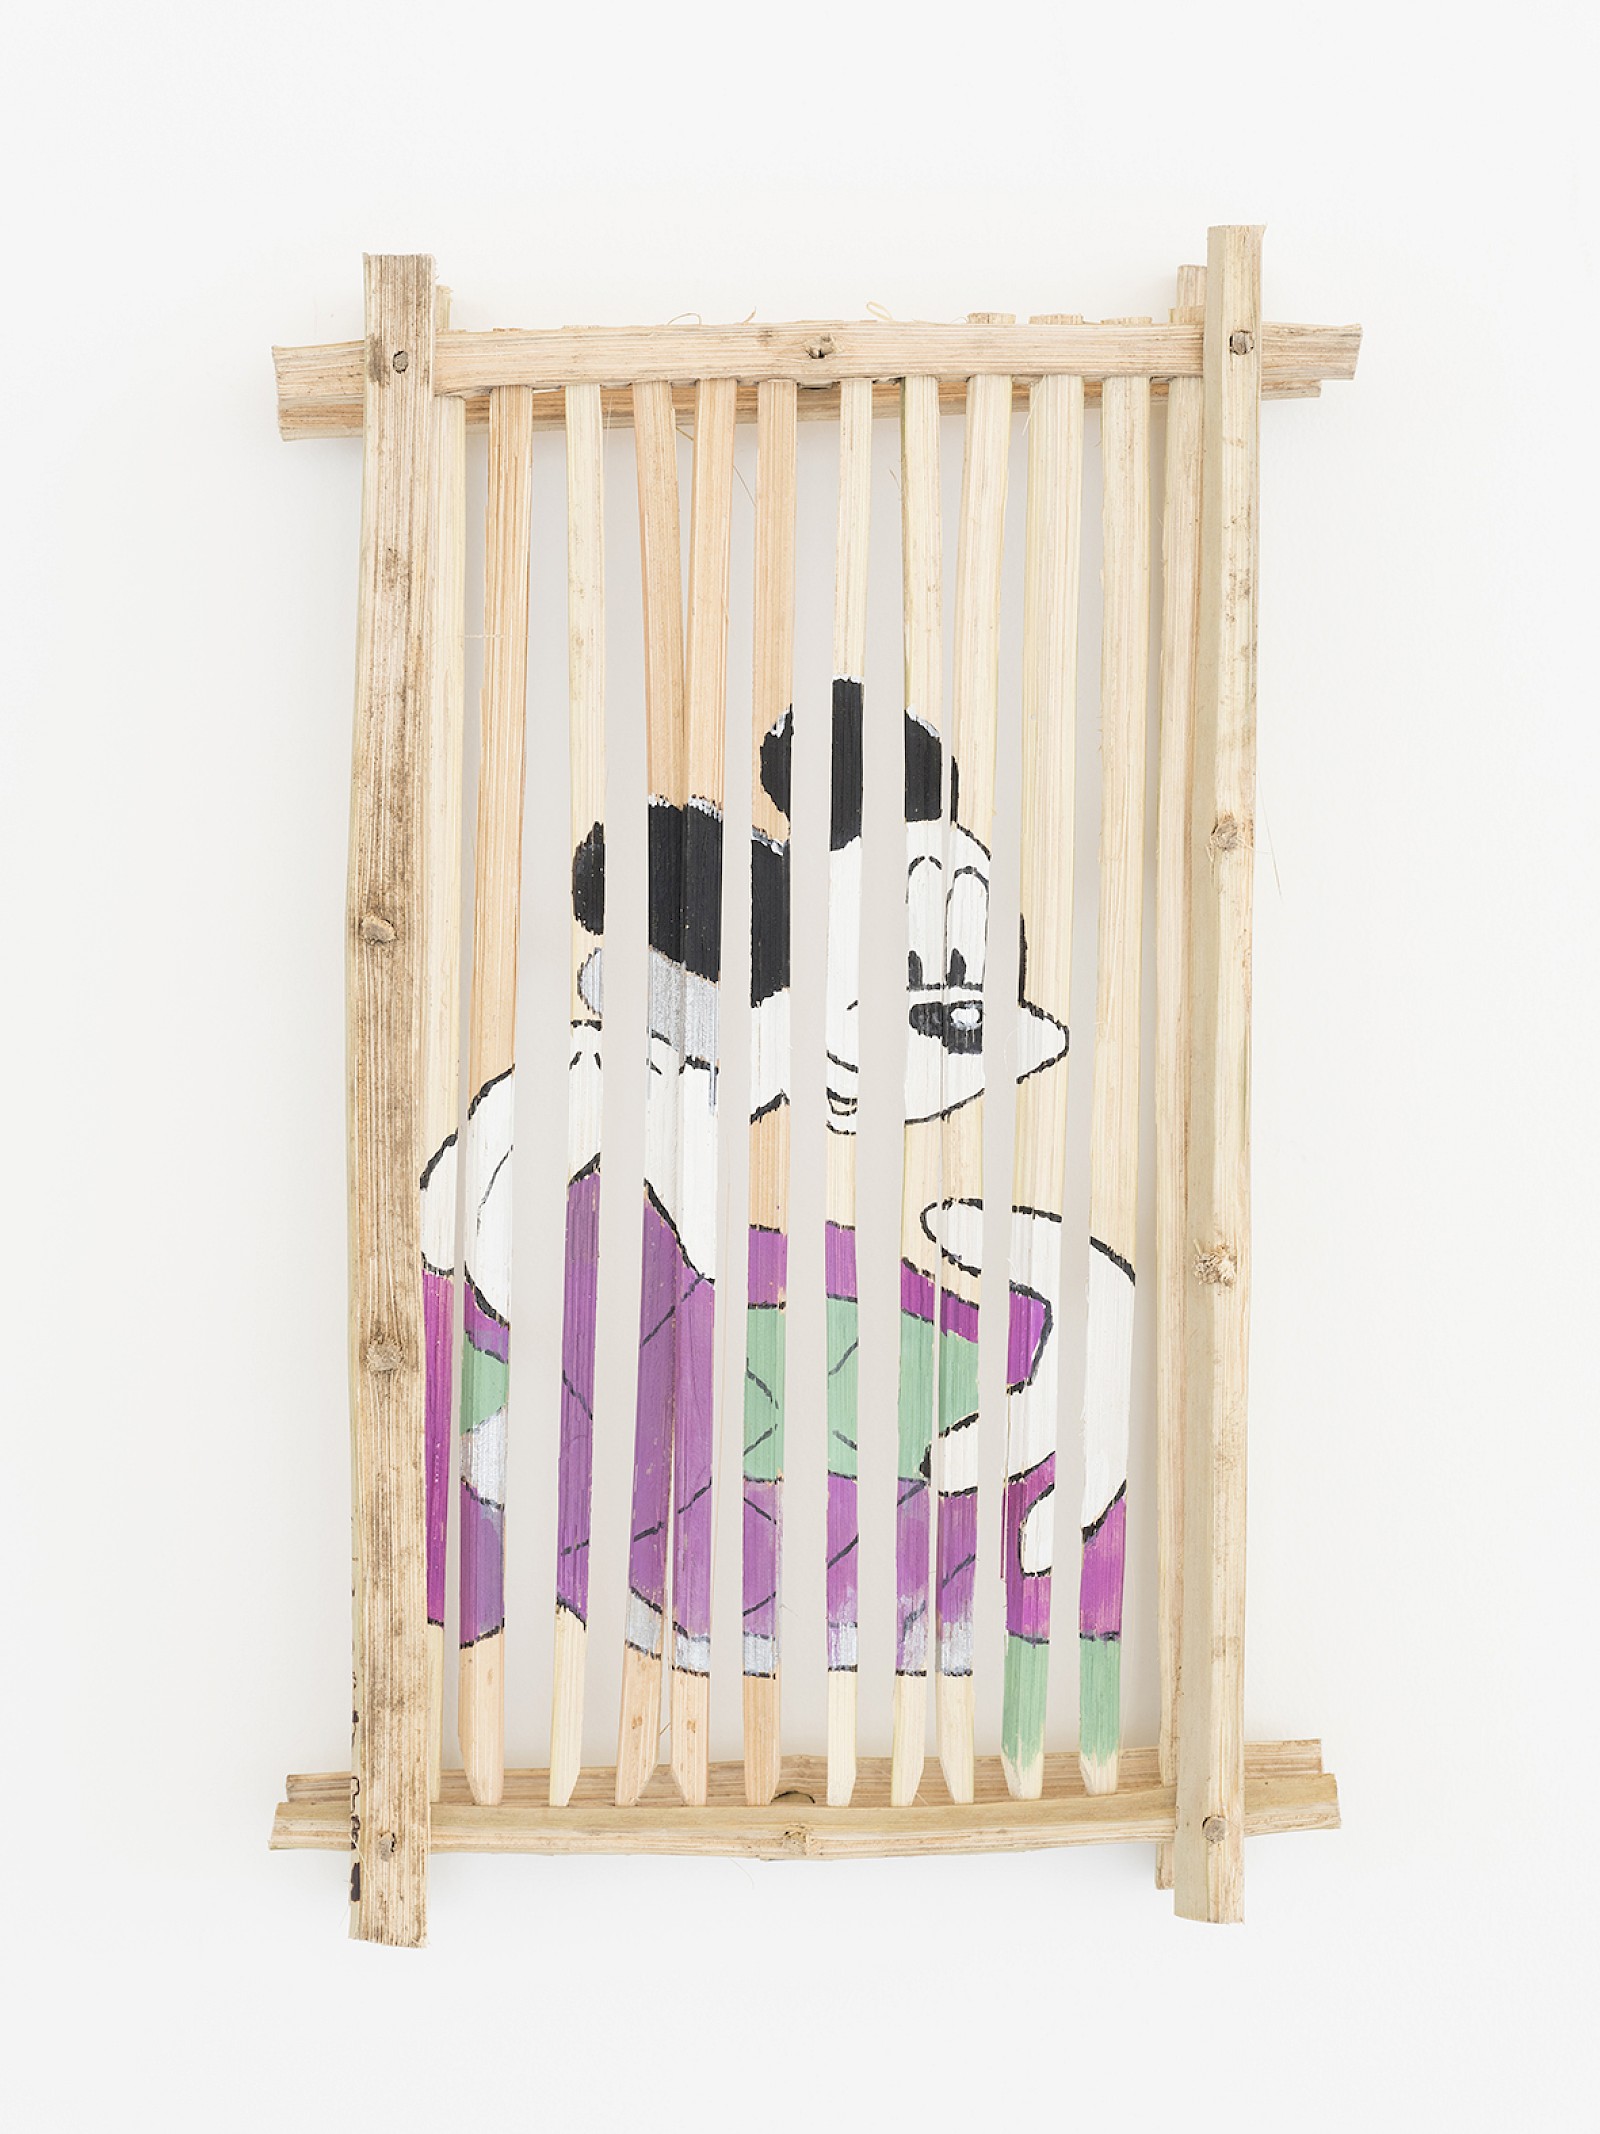 Image - Afas Children room, SIZE: 41 x 27 x 6 cm, Palm wood